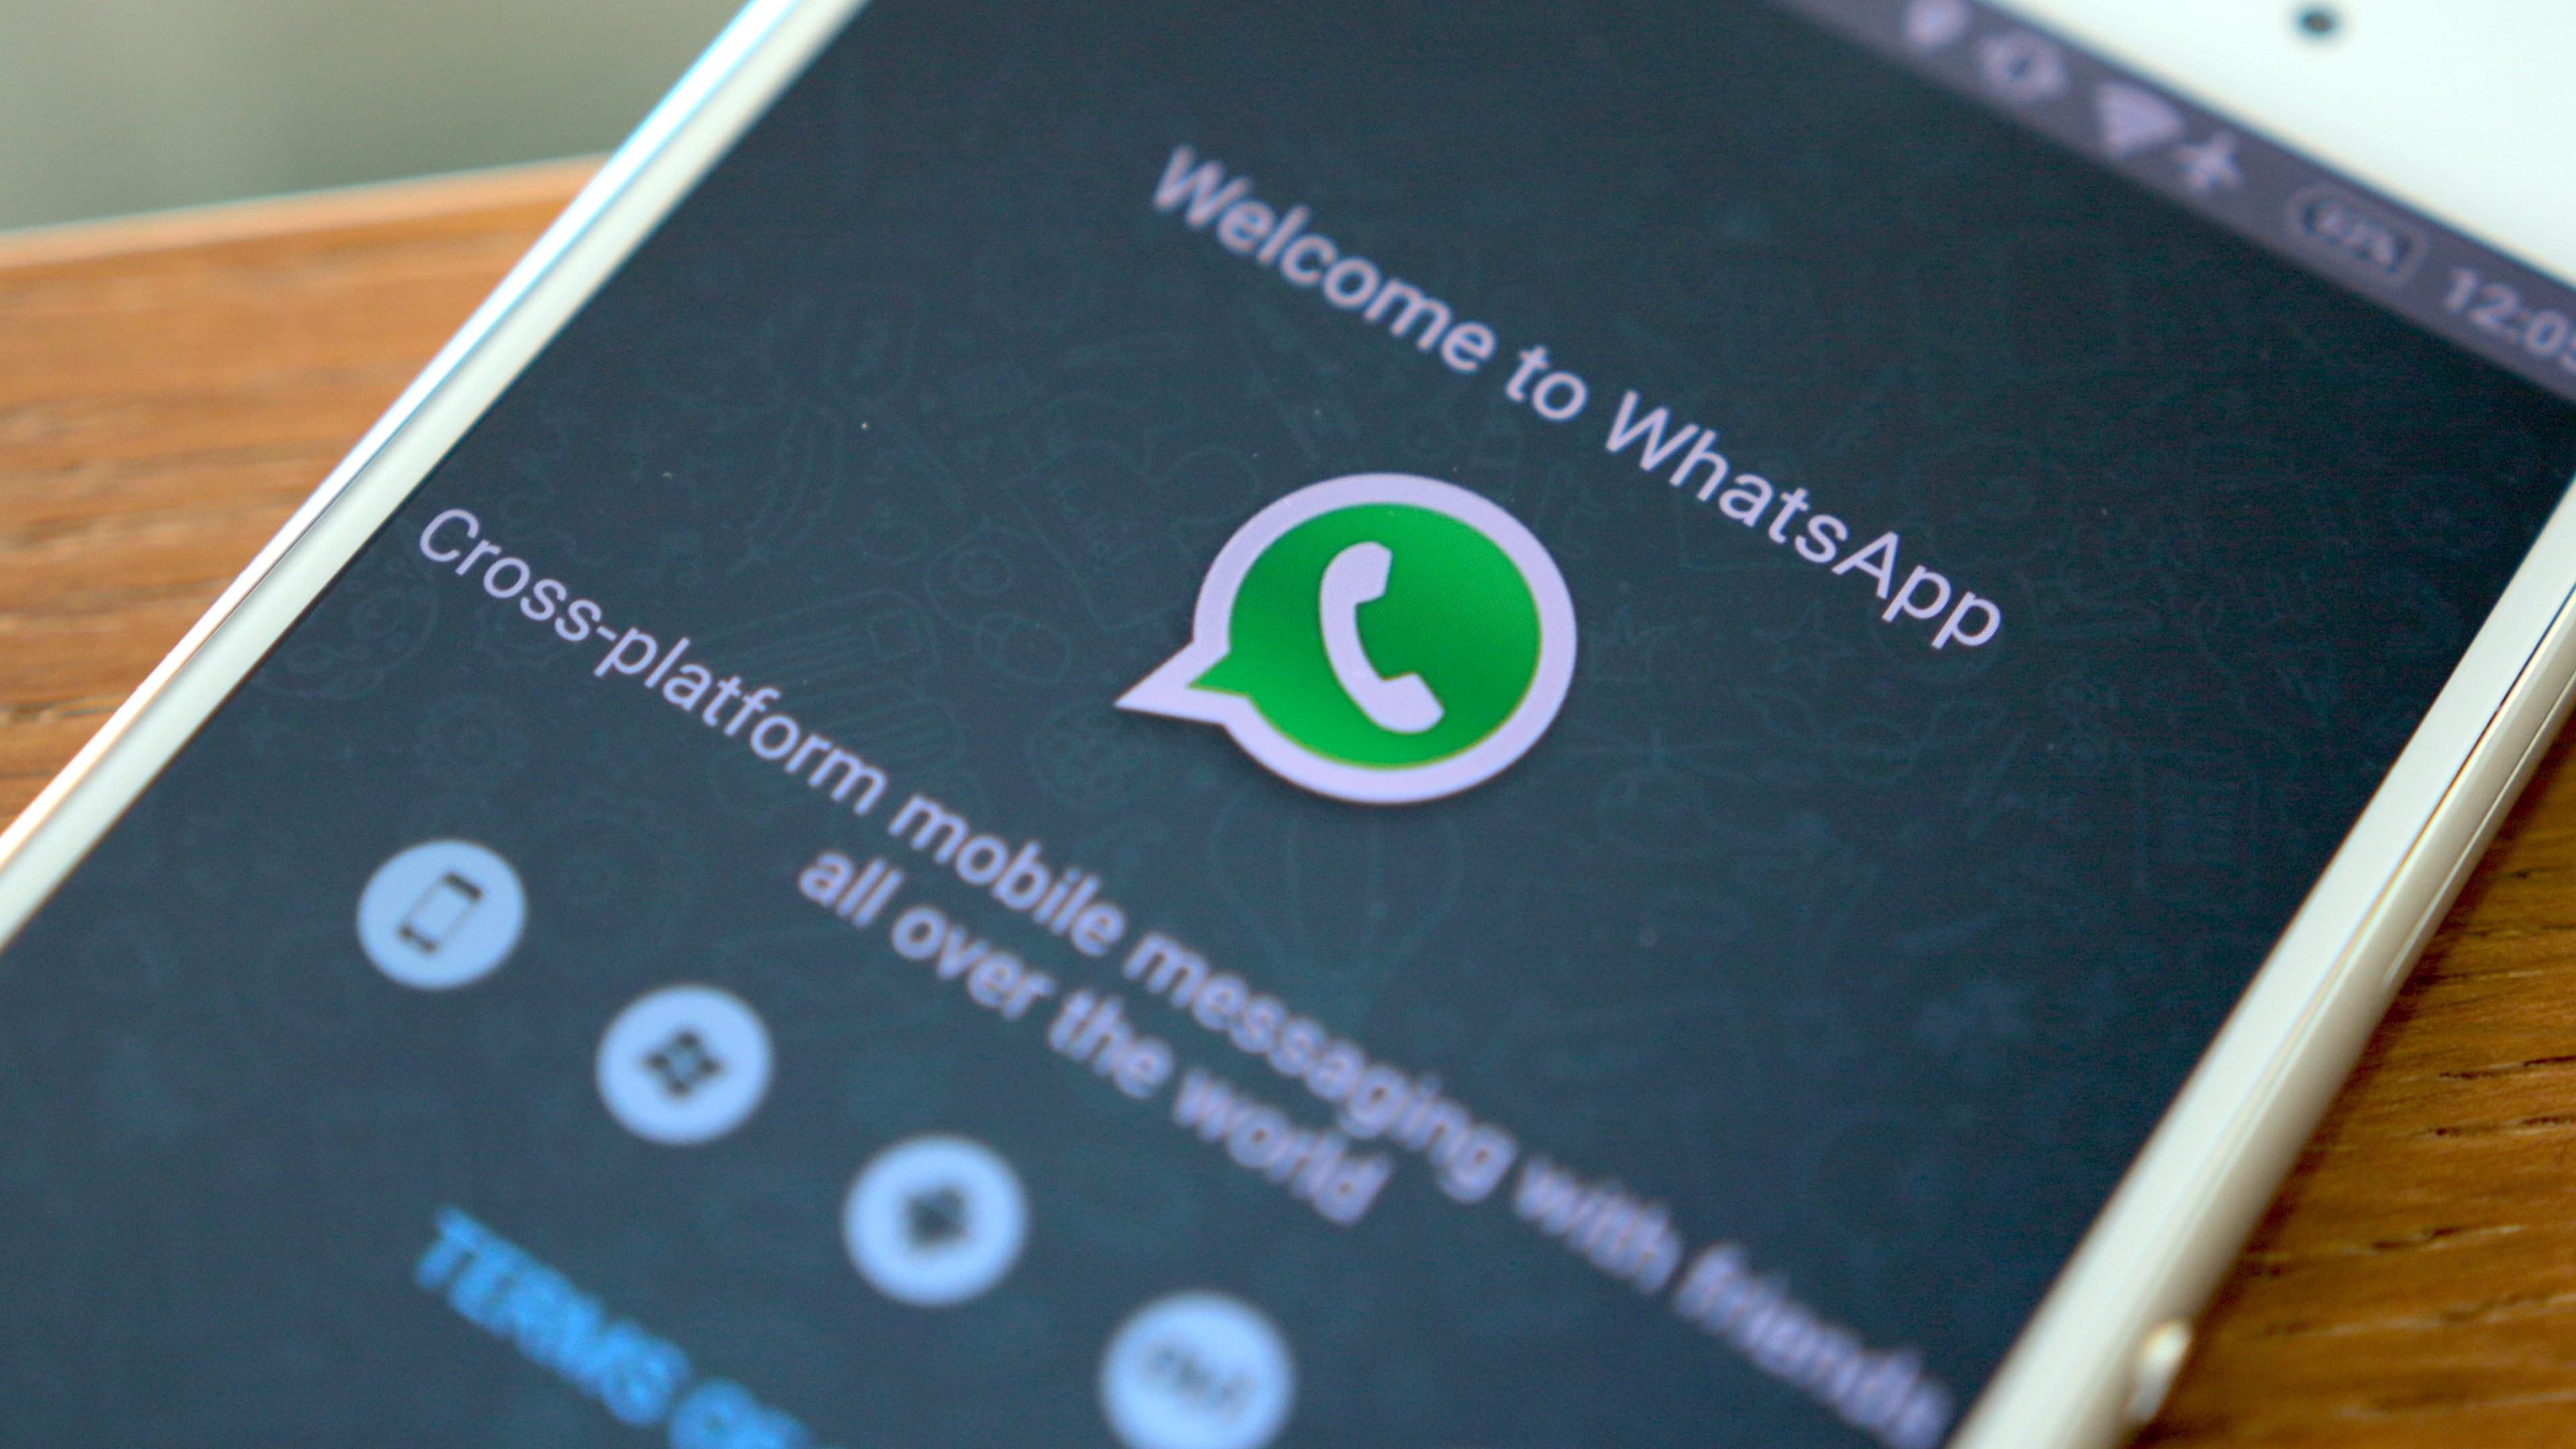 Aprenda 7 truques secretos para usar no WhatsApp pelo computador